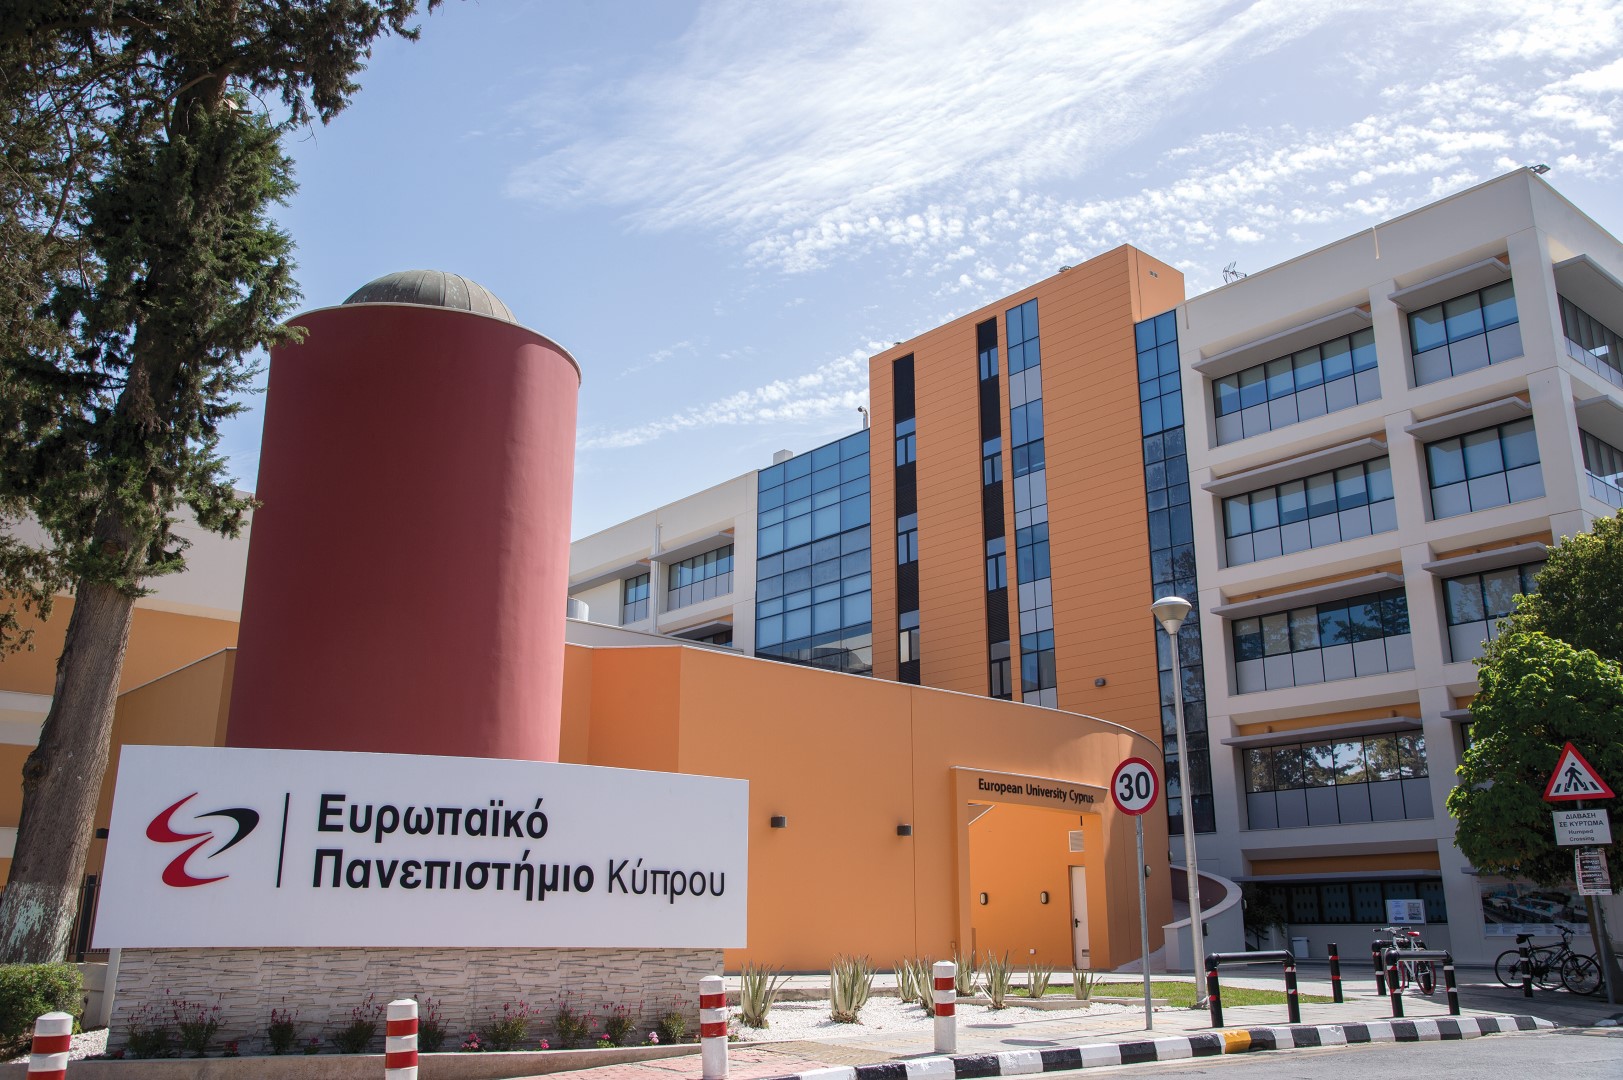 Το Ευρωπαϊκό Πανεπιστήμιο Κύπρου συμβάλει στην ενημέρωση για  θέματα πρόληψης λοιμωδών νοσημάτων και ελέγχου της πανδημίας